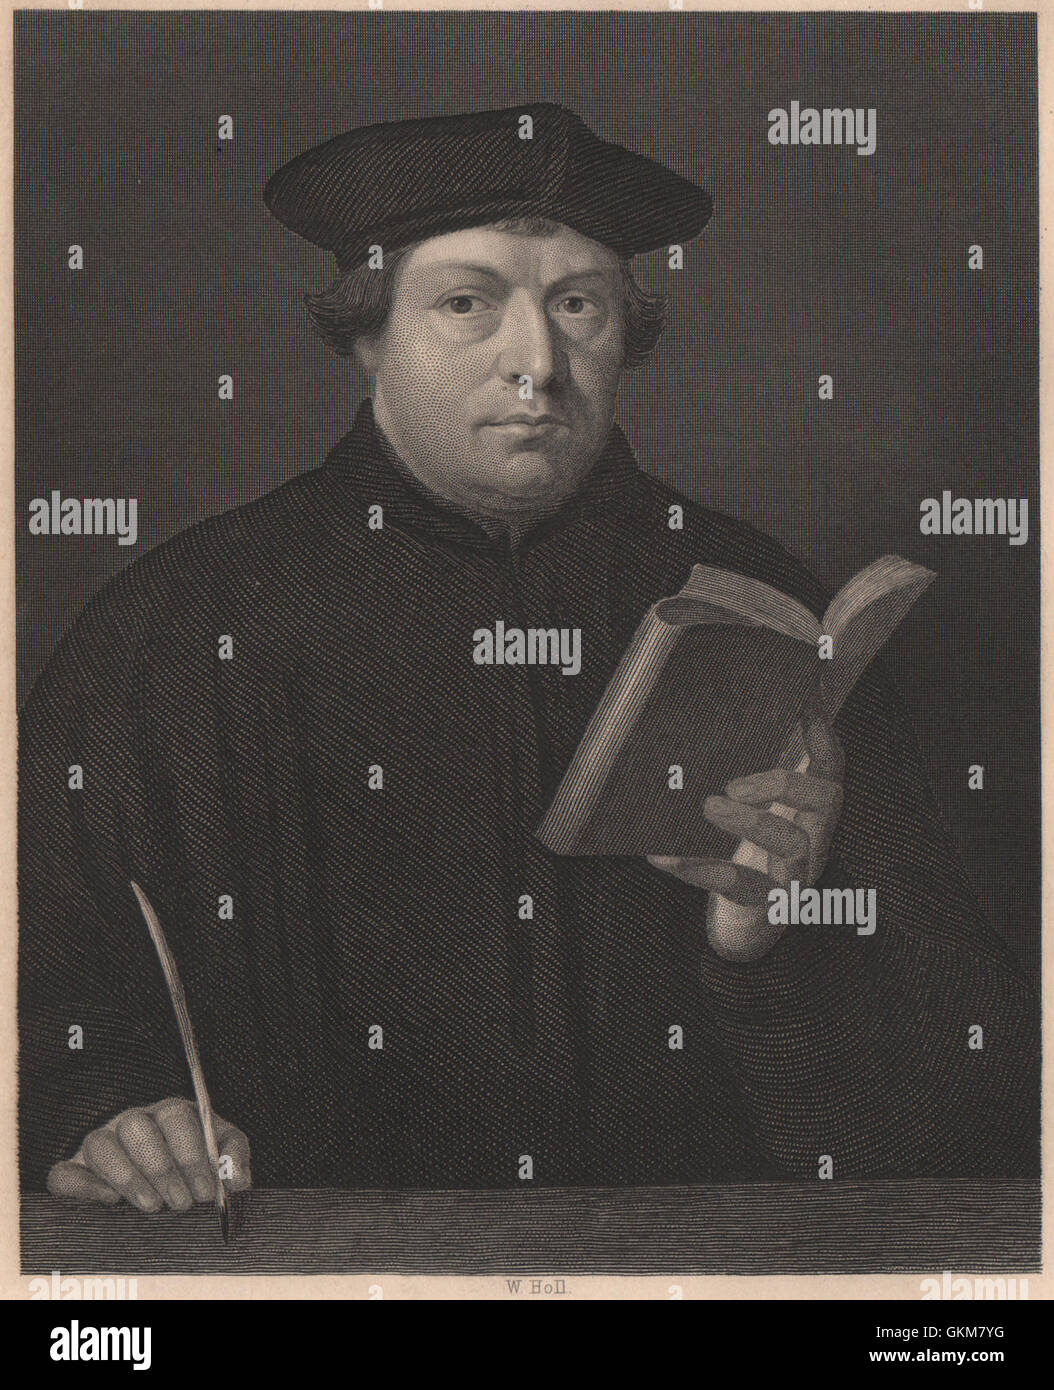 Martín Lutero. Reforma Protestante, grabado antiguo 1840 Foto de stock